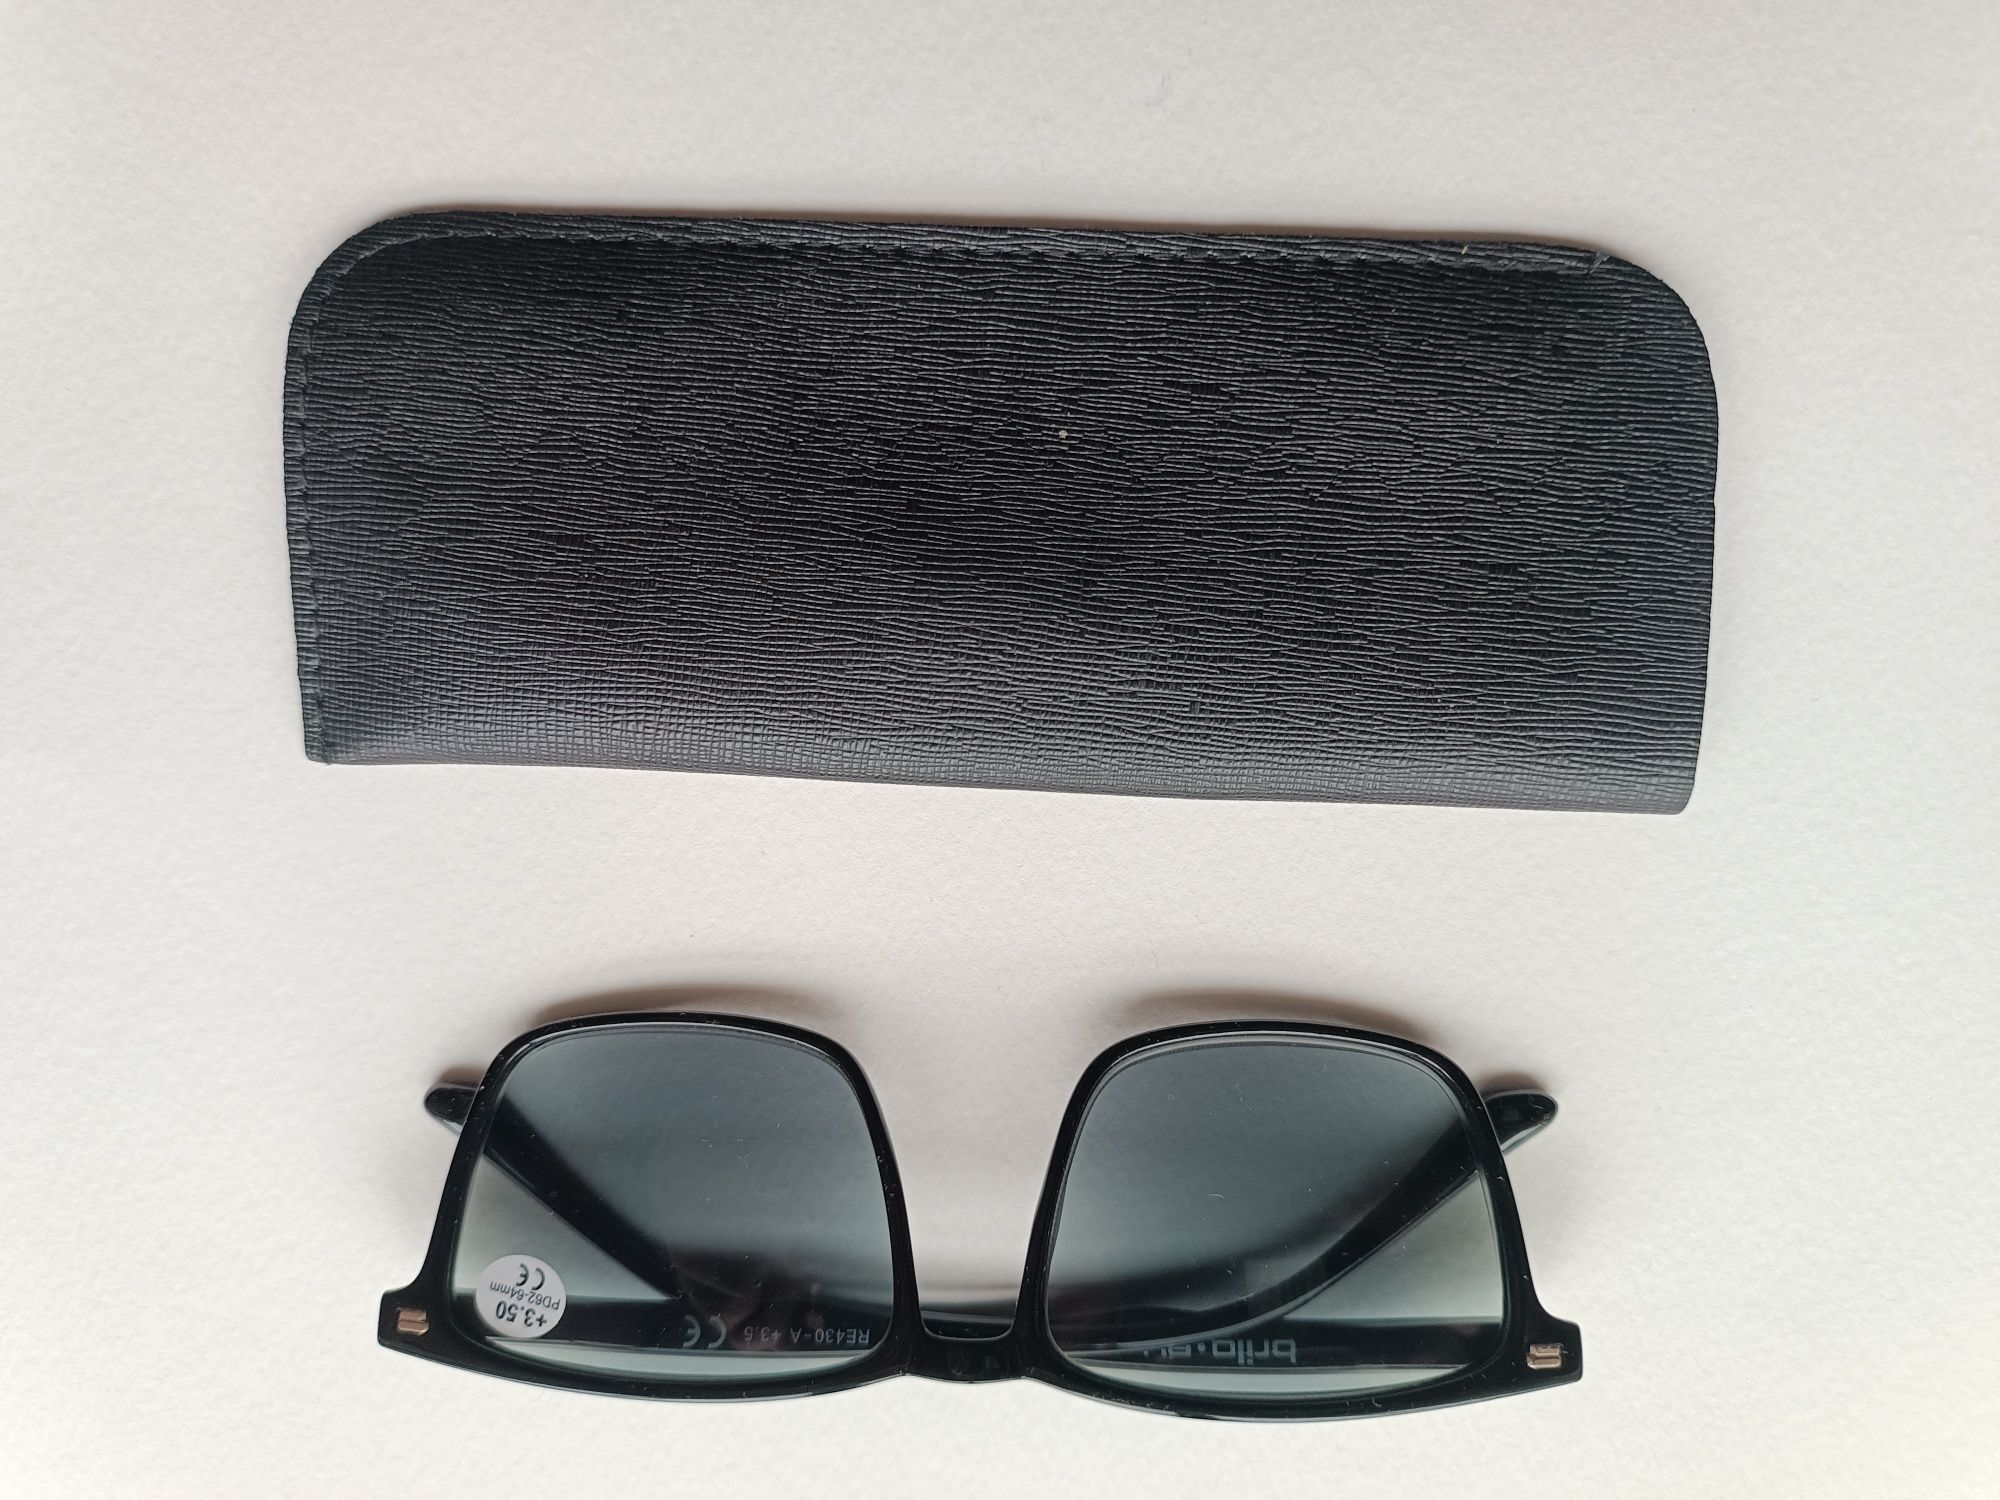 Okulary przeciwsłoneczne korekcyjne+3.0